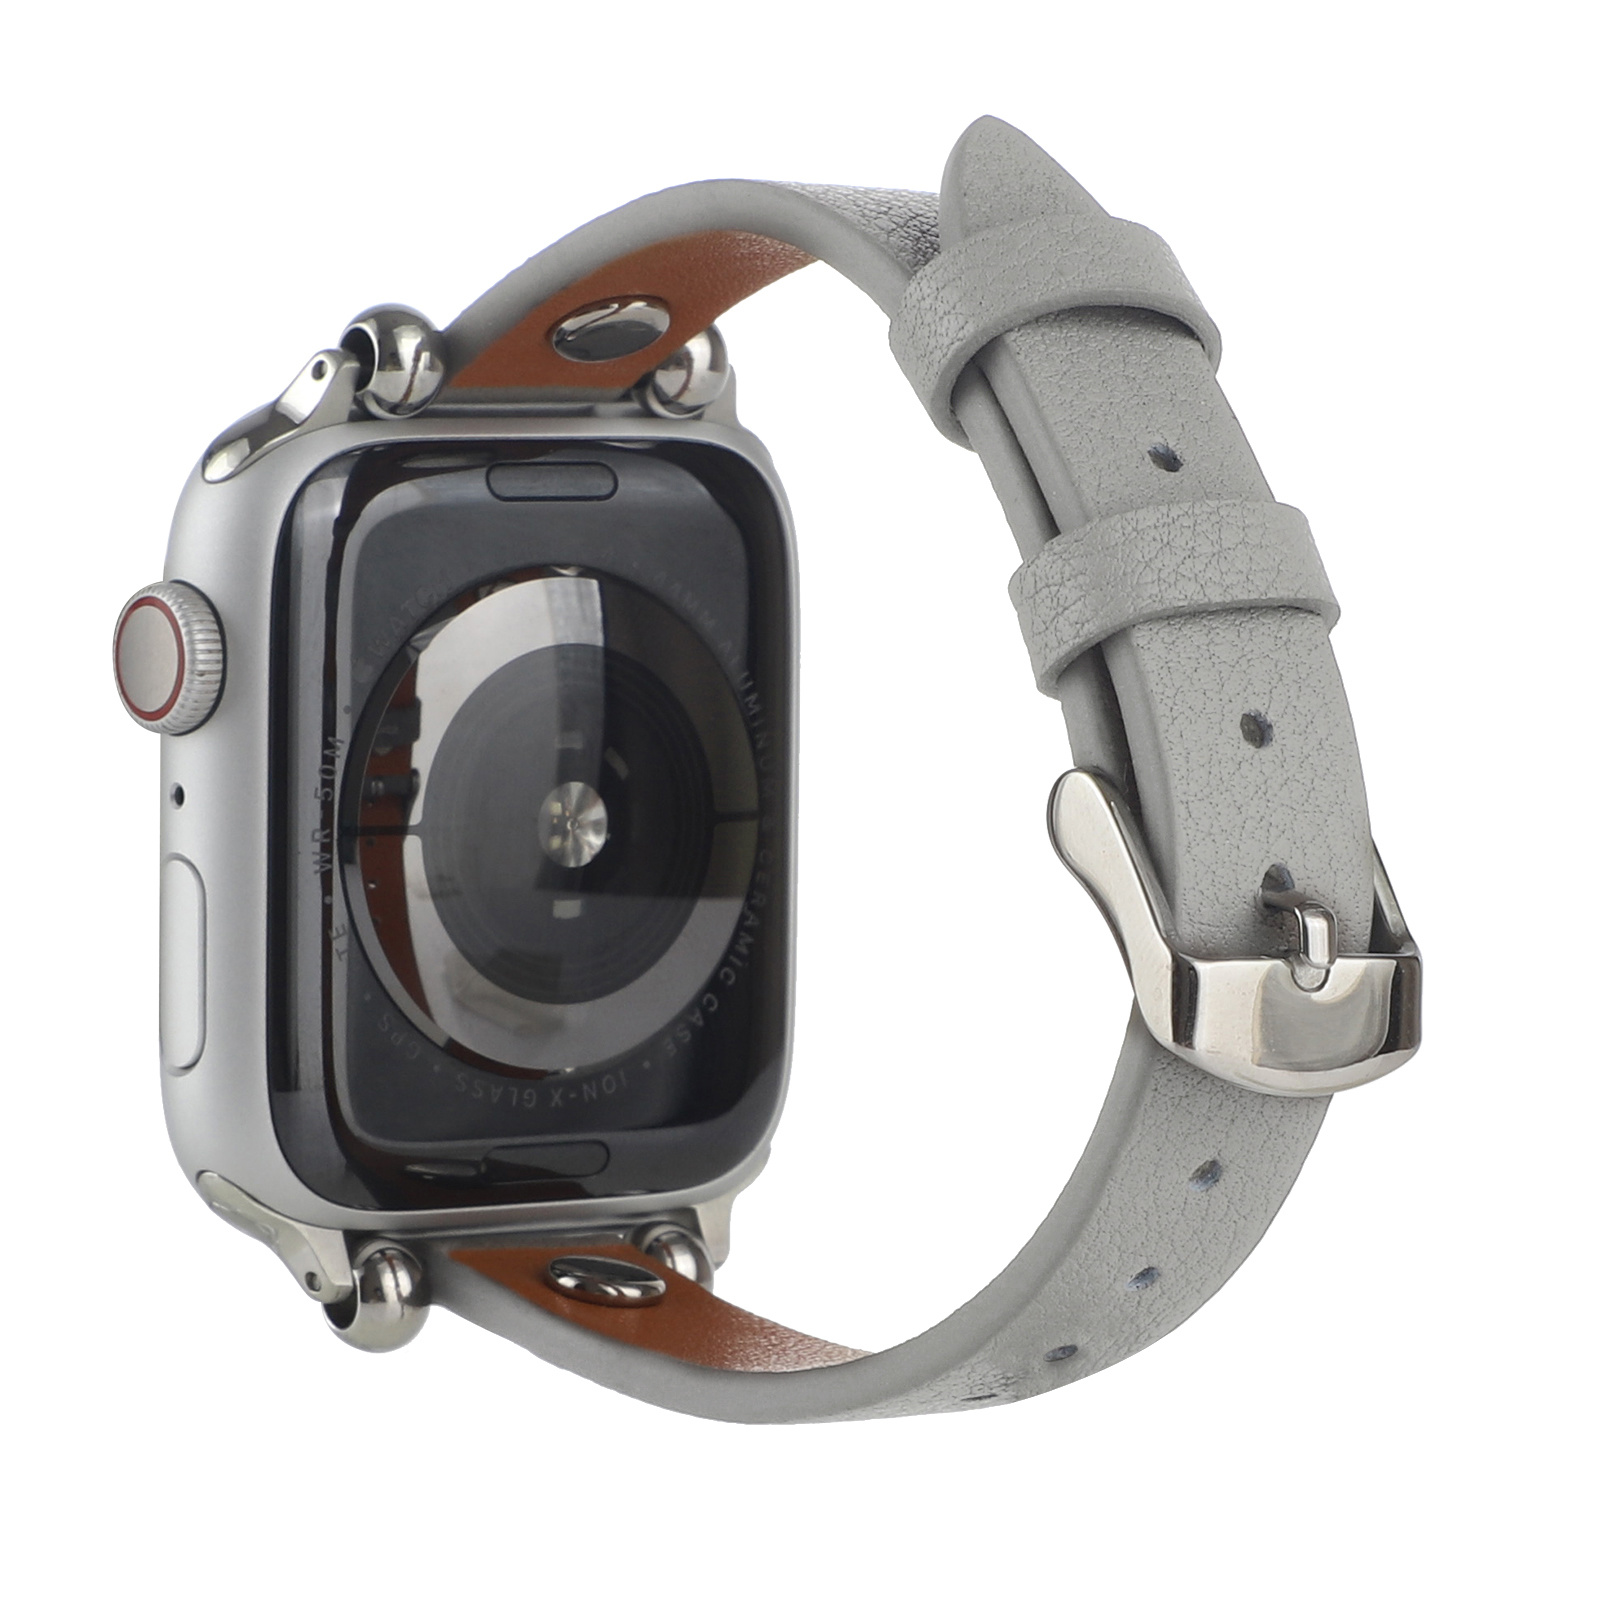 Correa inteligente de piel para el Apple Watch - gris